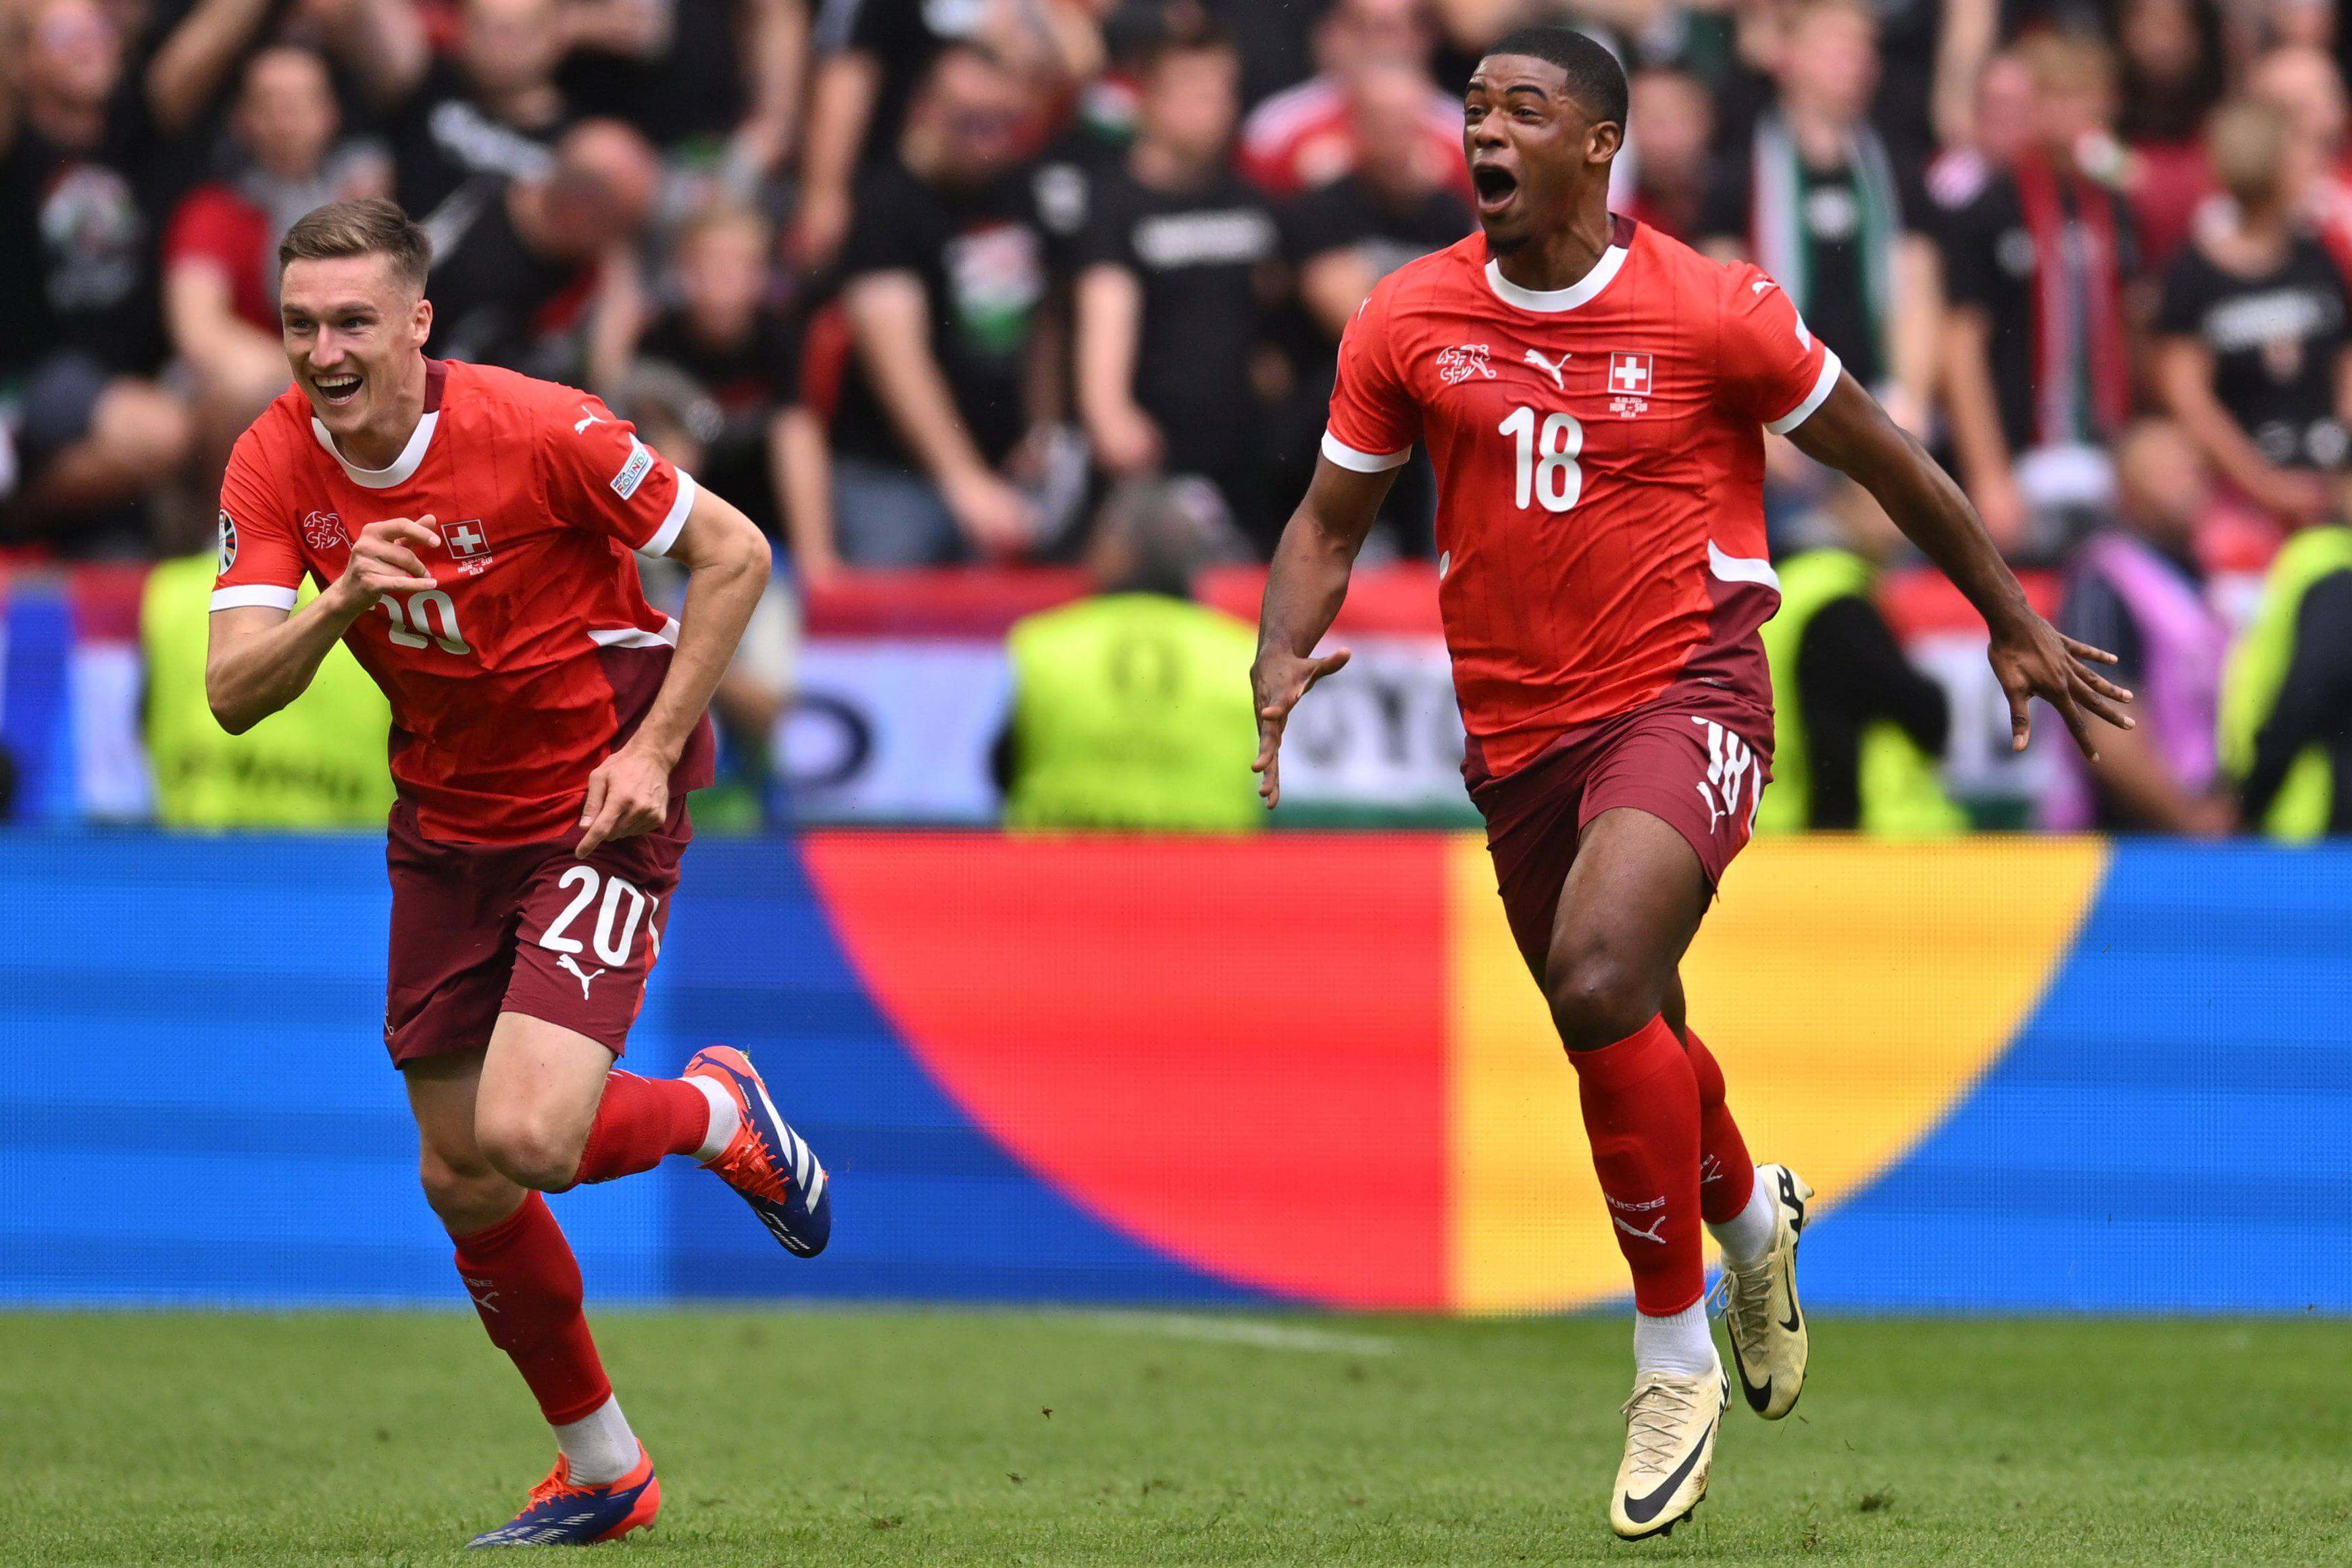 Duah celebra el primer gol de Suiza ante Hungría (Cordon Press)